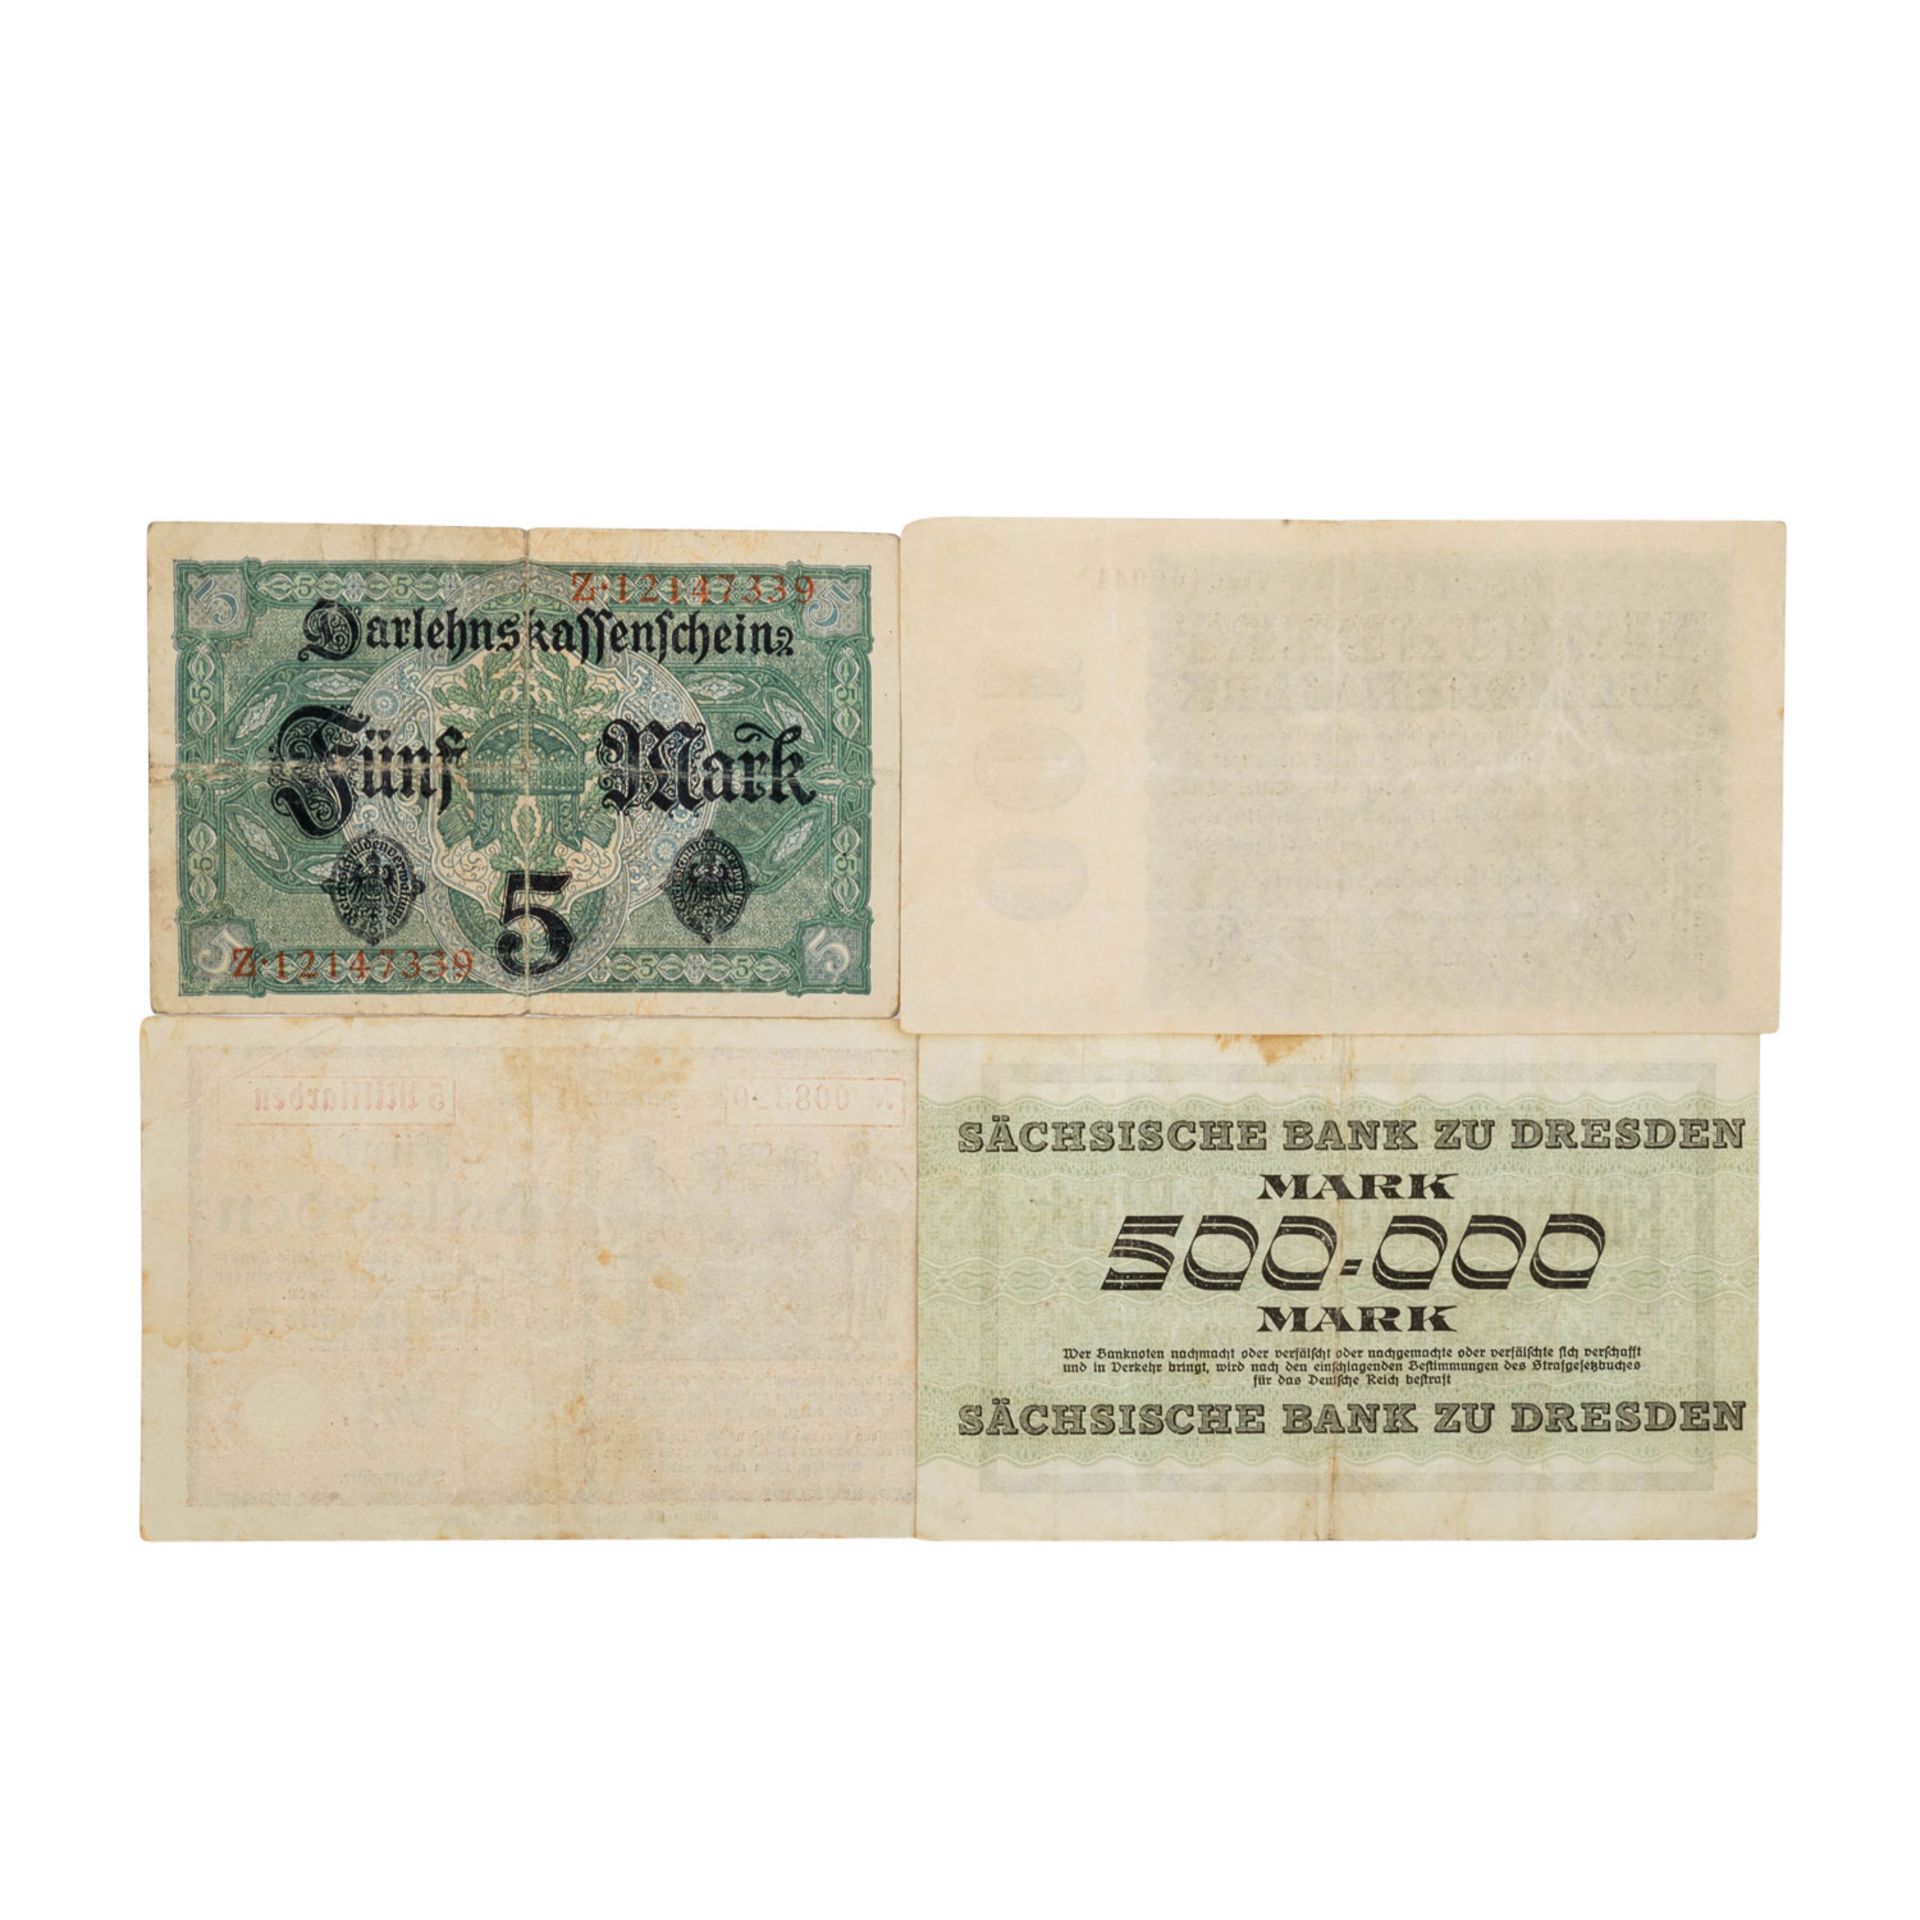 Banknoten der Weimarer Republik, Deutschland 1.Hälfte 20.Jh. - - Bild 5 aus 7